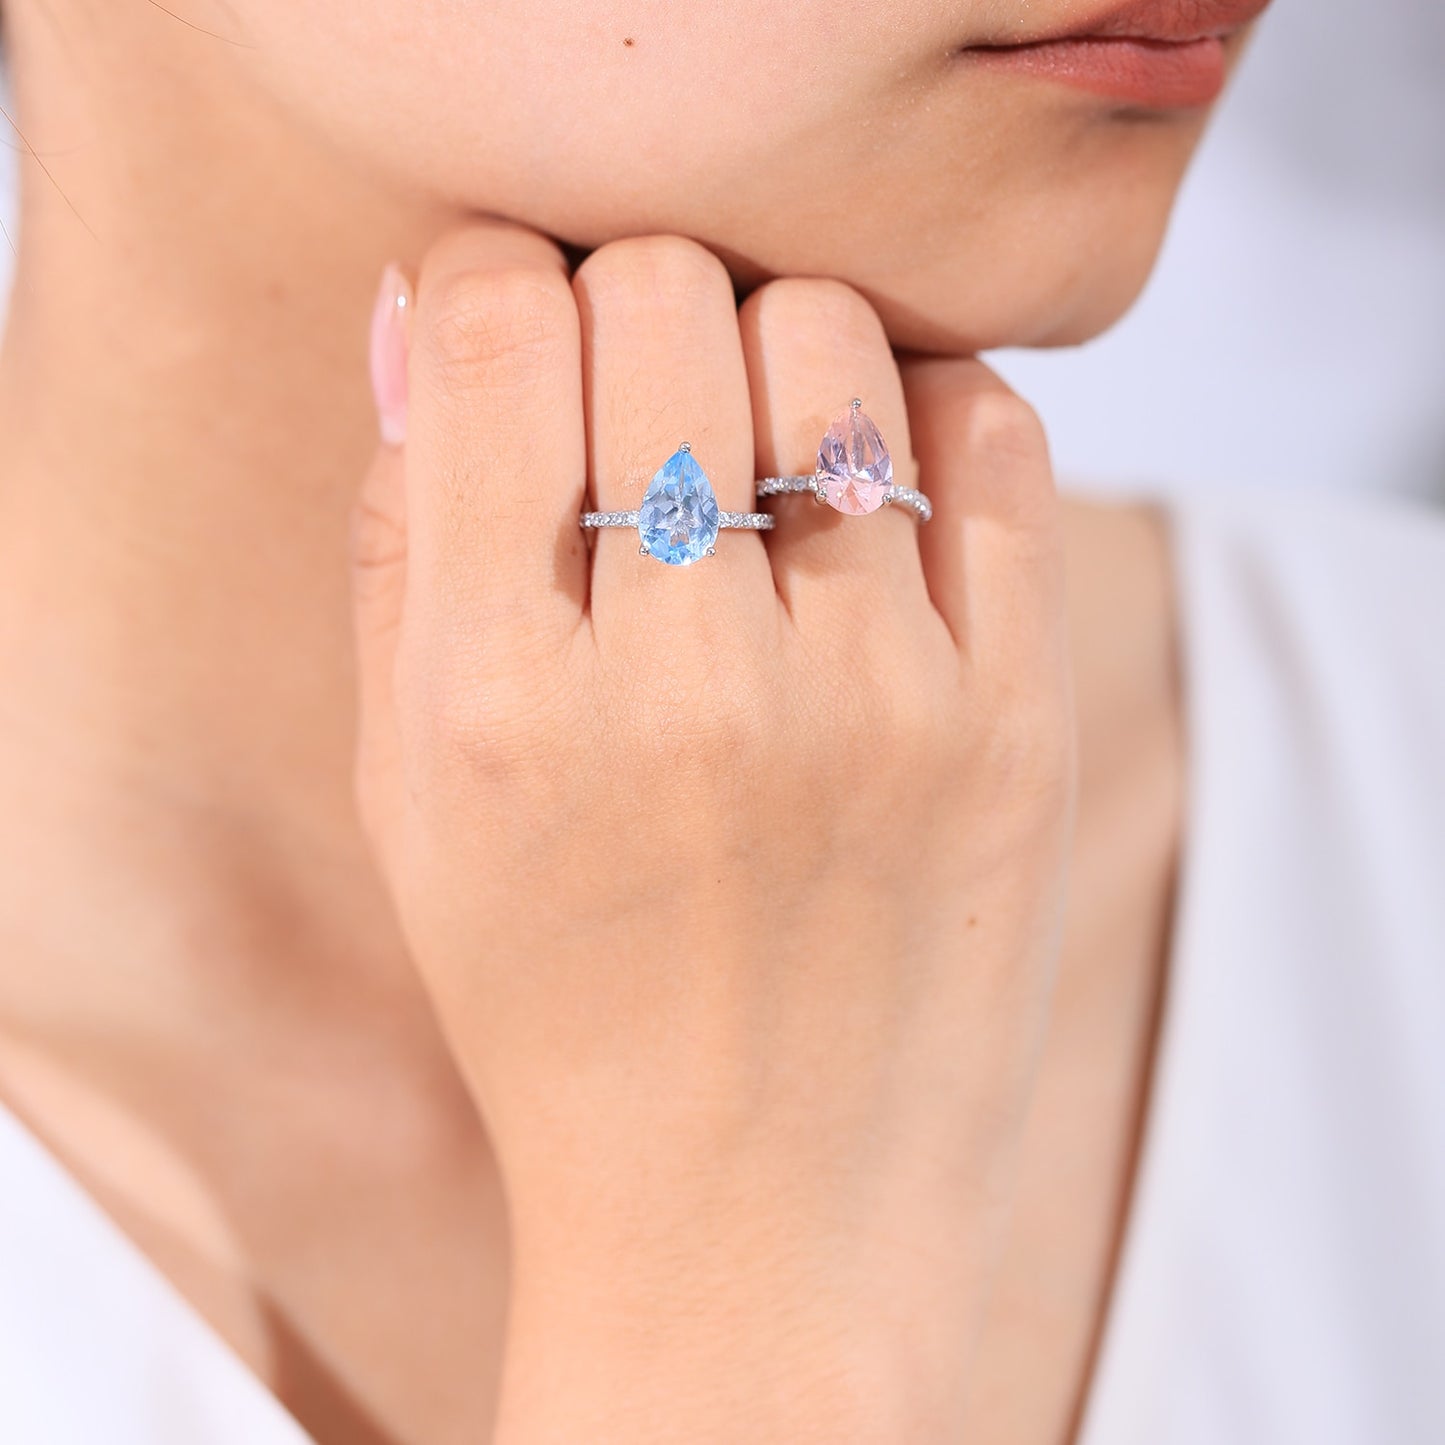 GEM'S BALLET Classic Pear Shape Sky Blue Topaz Engagement Rings 925 Sterling Silver Dainty Promise Ring September Birthstone